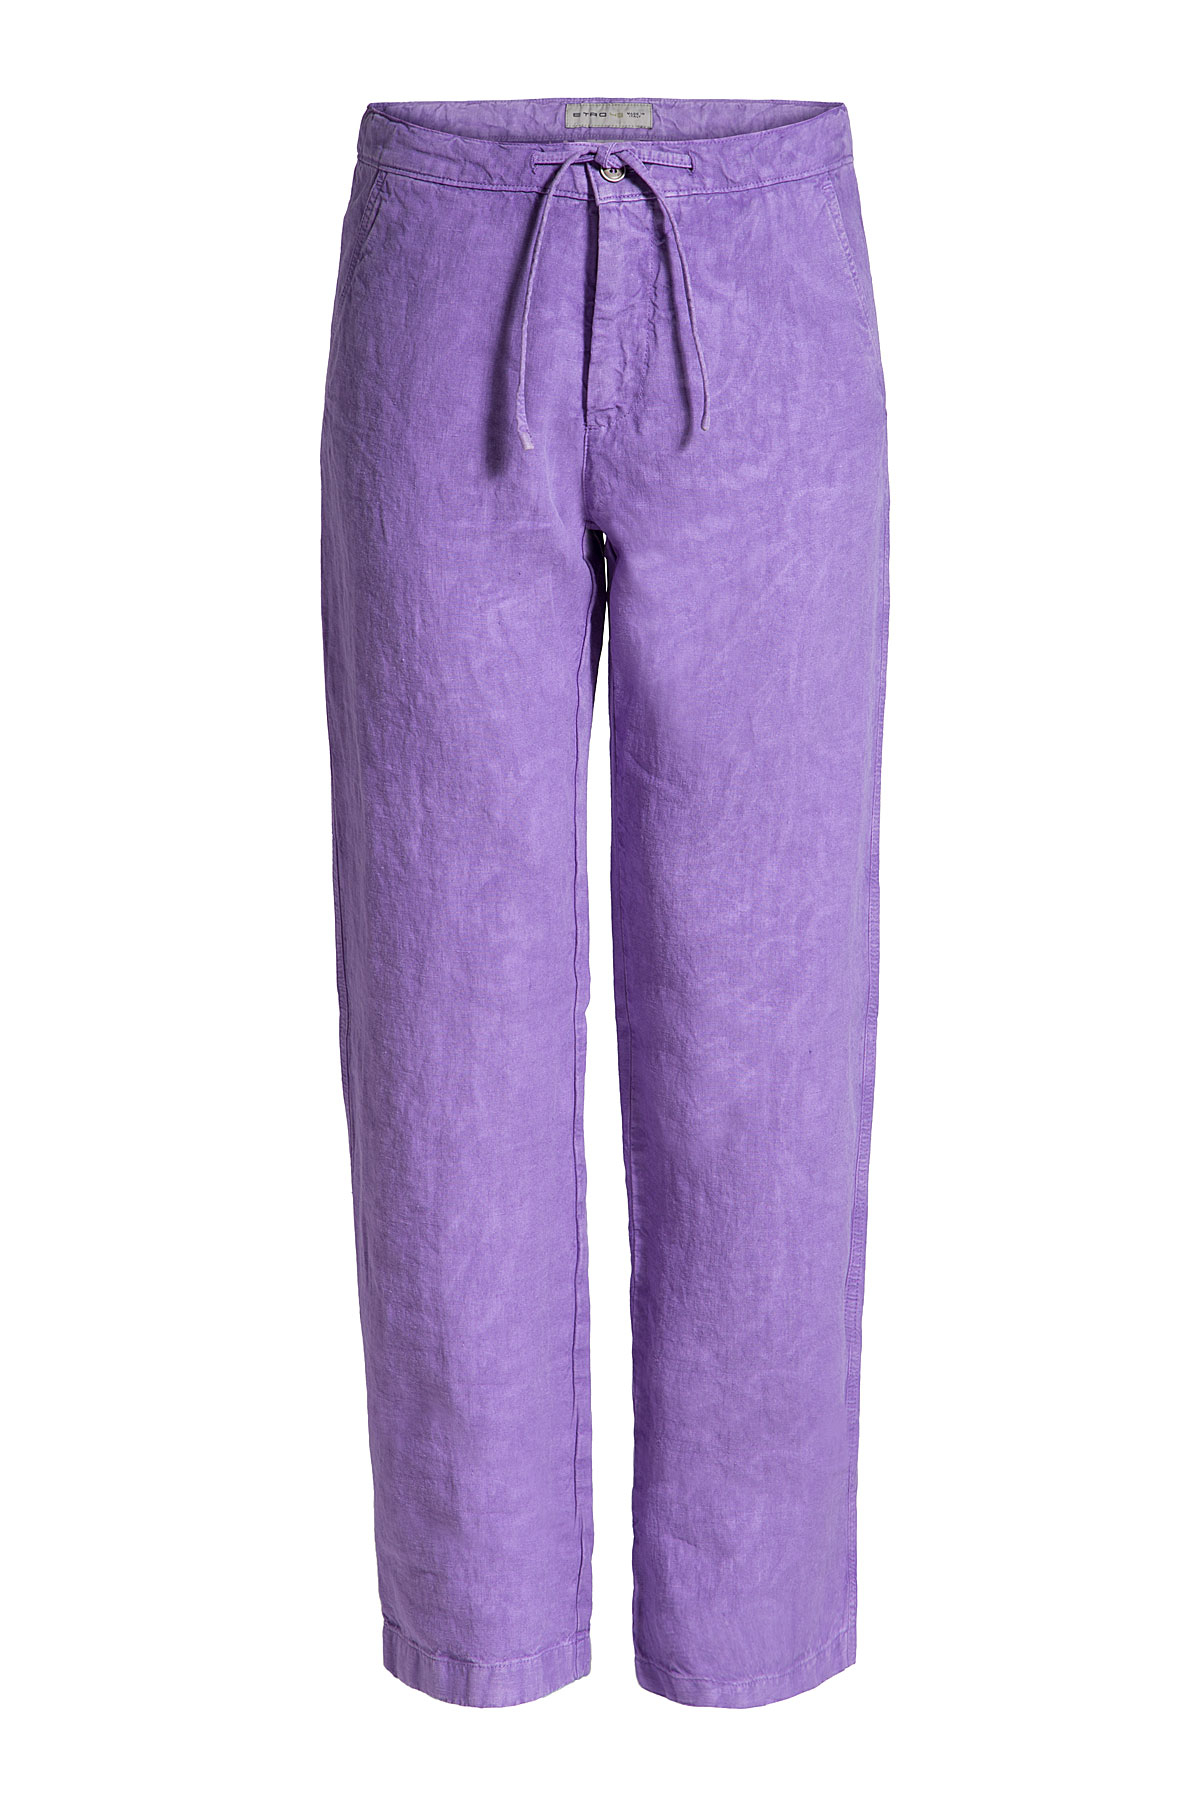 Lyst - Etro Linen Pants - Purple in Purple for Men